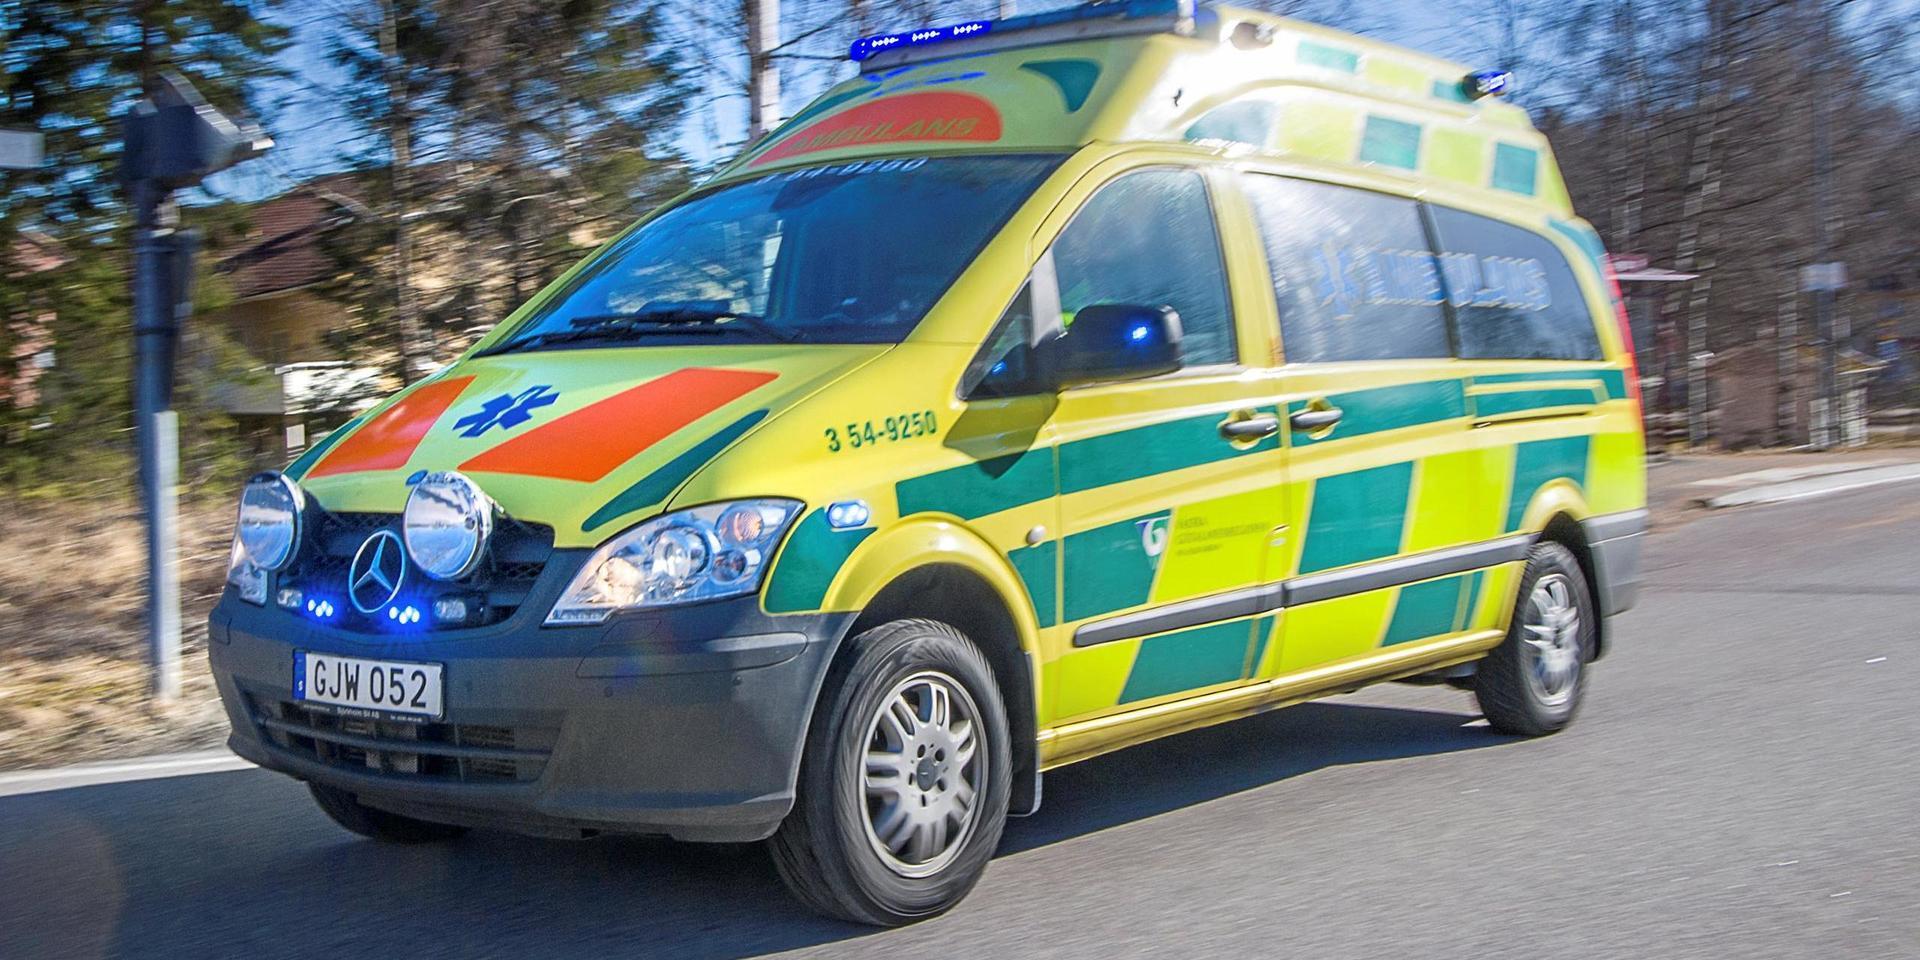 Tre av NU-sjukvårdens ambulanser ska inte användas i sommar, vilket innebär onödiga risker, menar Martin Rödström.